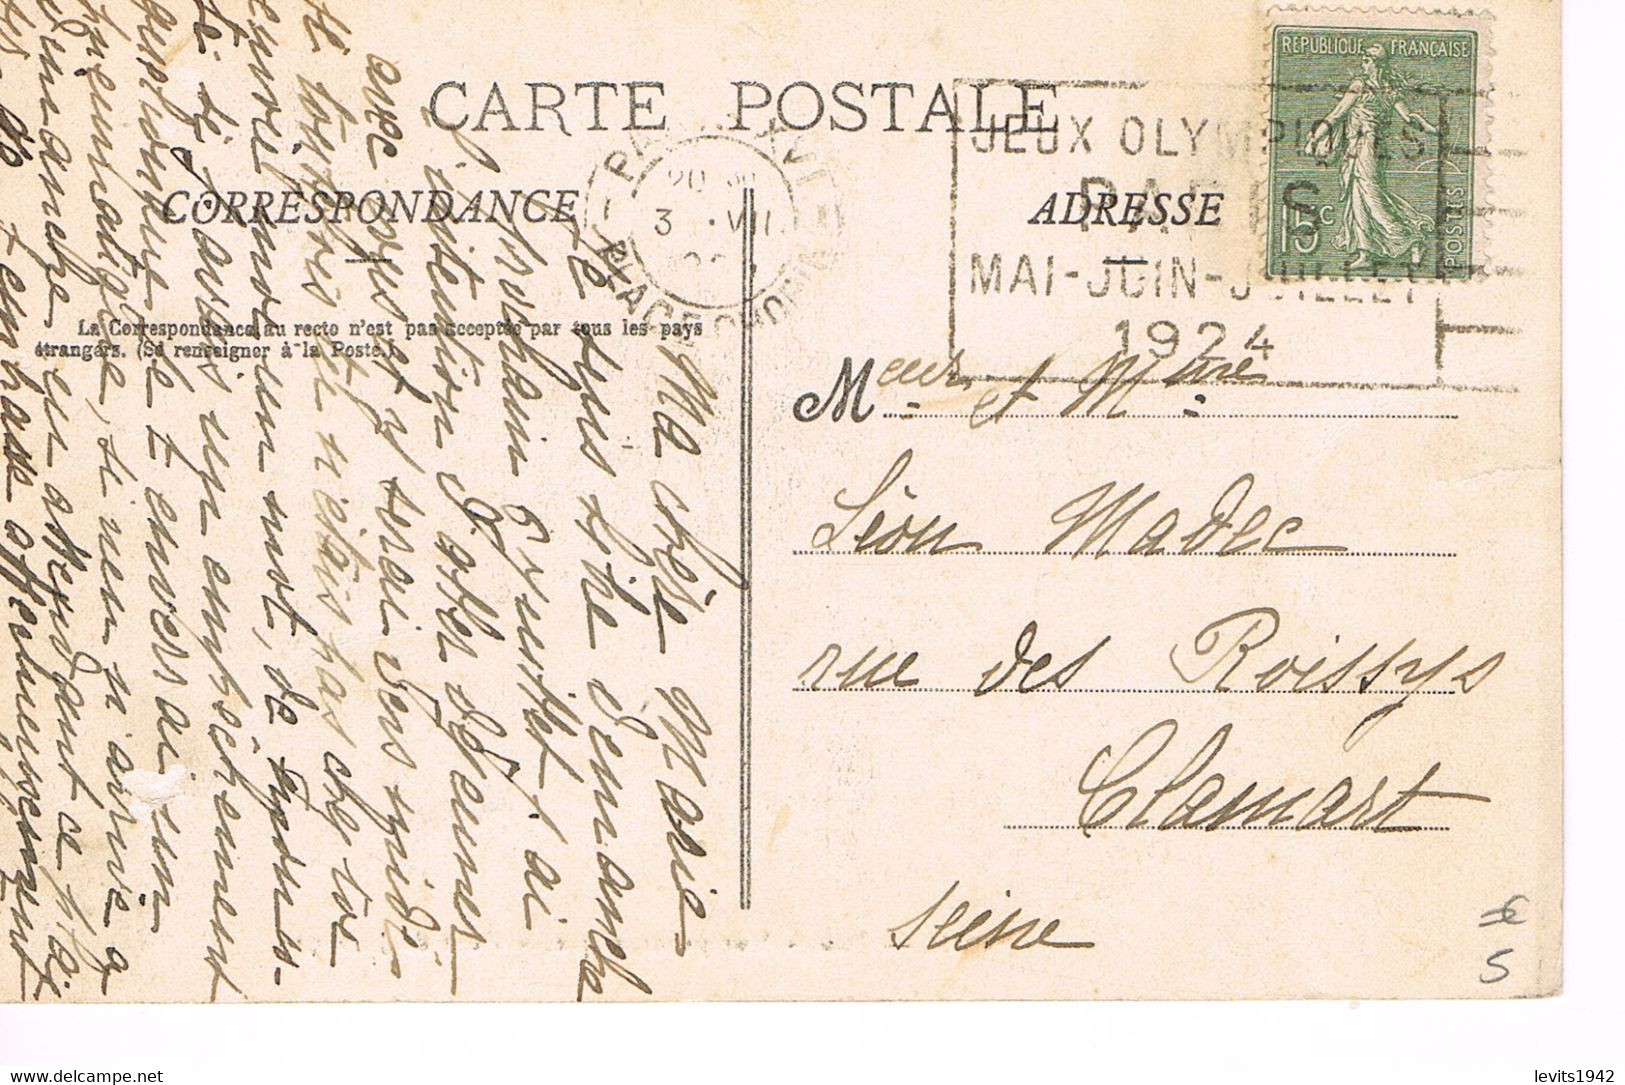 JEUX OLYMPIQUES 1924 -  MARQUE POSTALE - ESCRIME - TIR DE CHASSE - POLO - JOUR DE COMPETITION - 03-07 - - Ete 1924: Paris